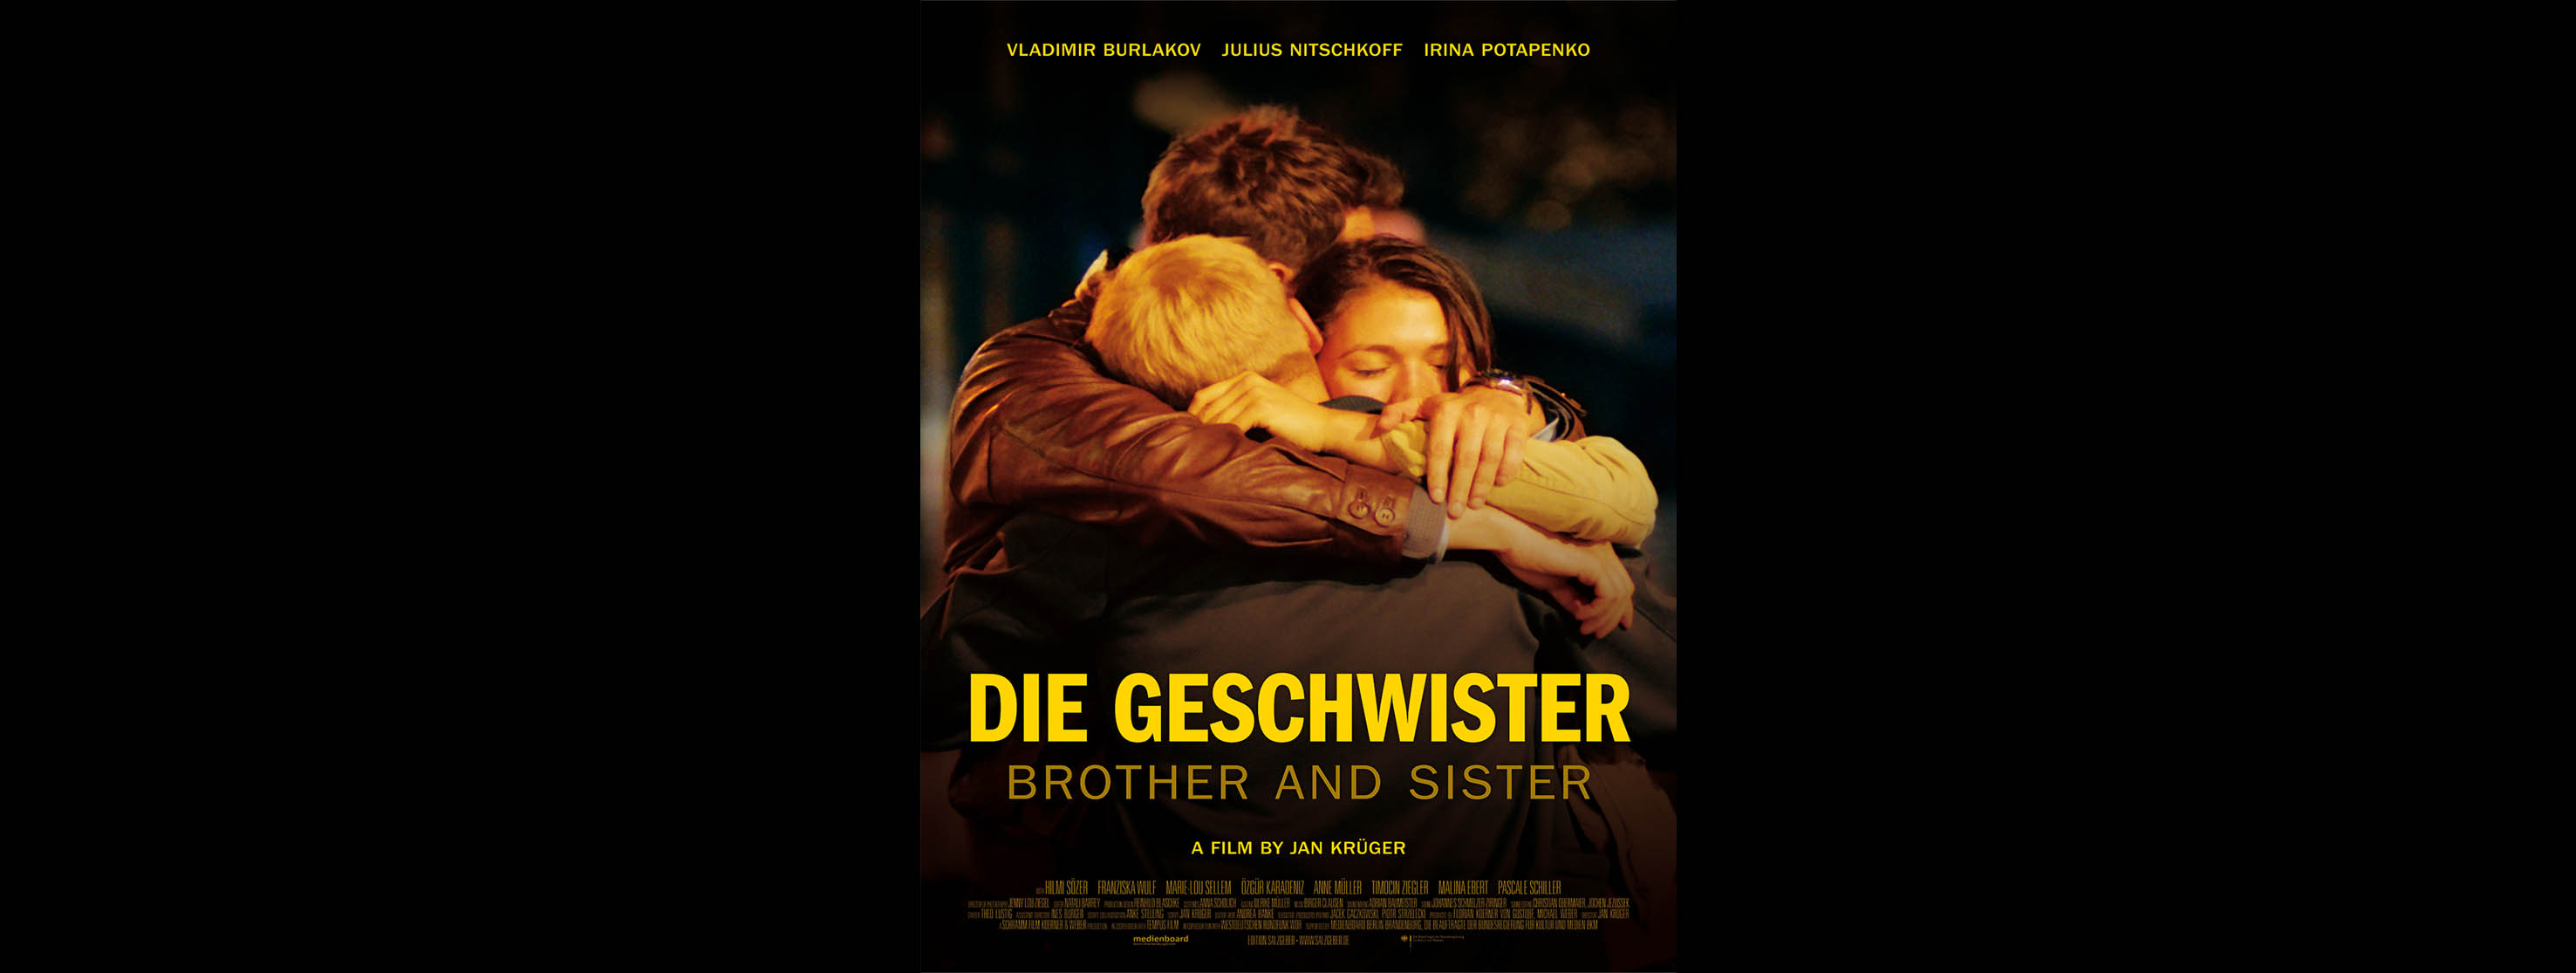 "DIE GESCHWISTER" feature film directed by Jan Krüger premiere in Germany